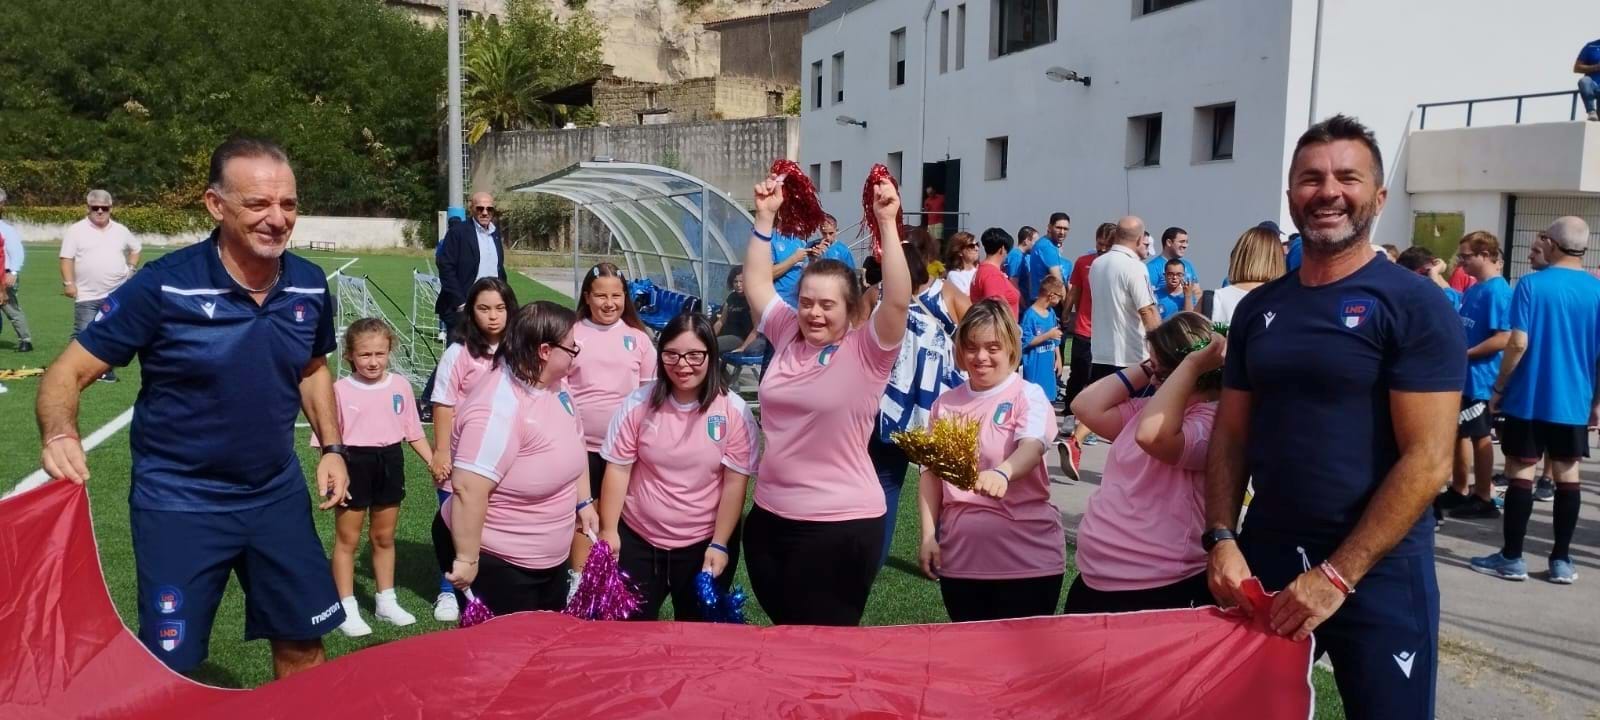 Le emozioni, la gioia e i sorrisi degli oltre cento partecipanti all'Open day Special della Campania 